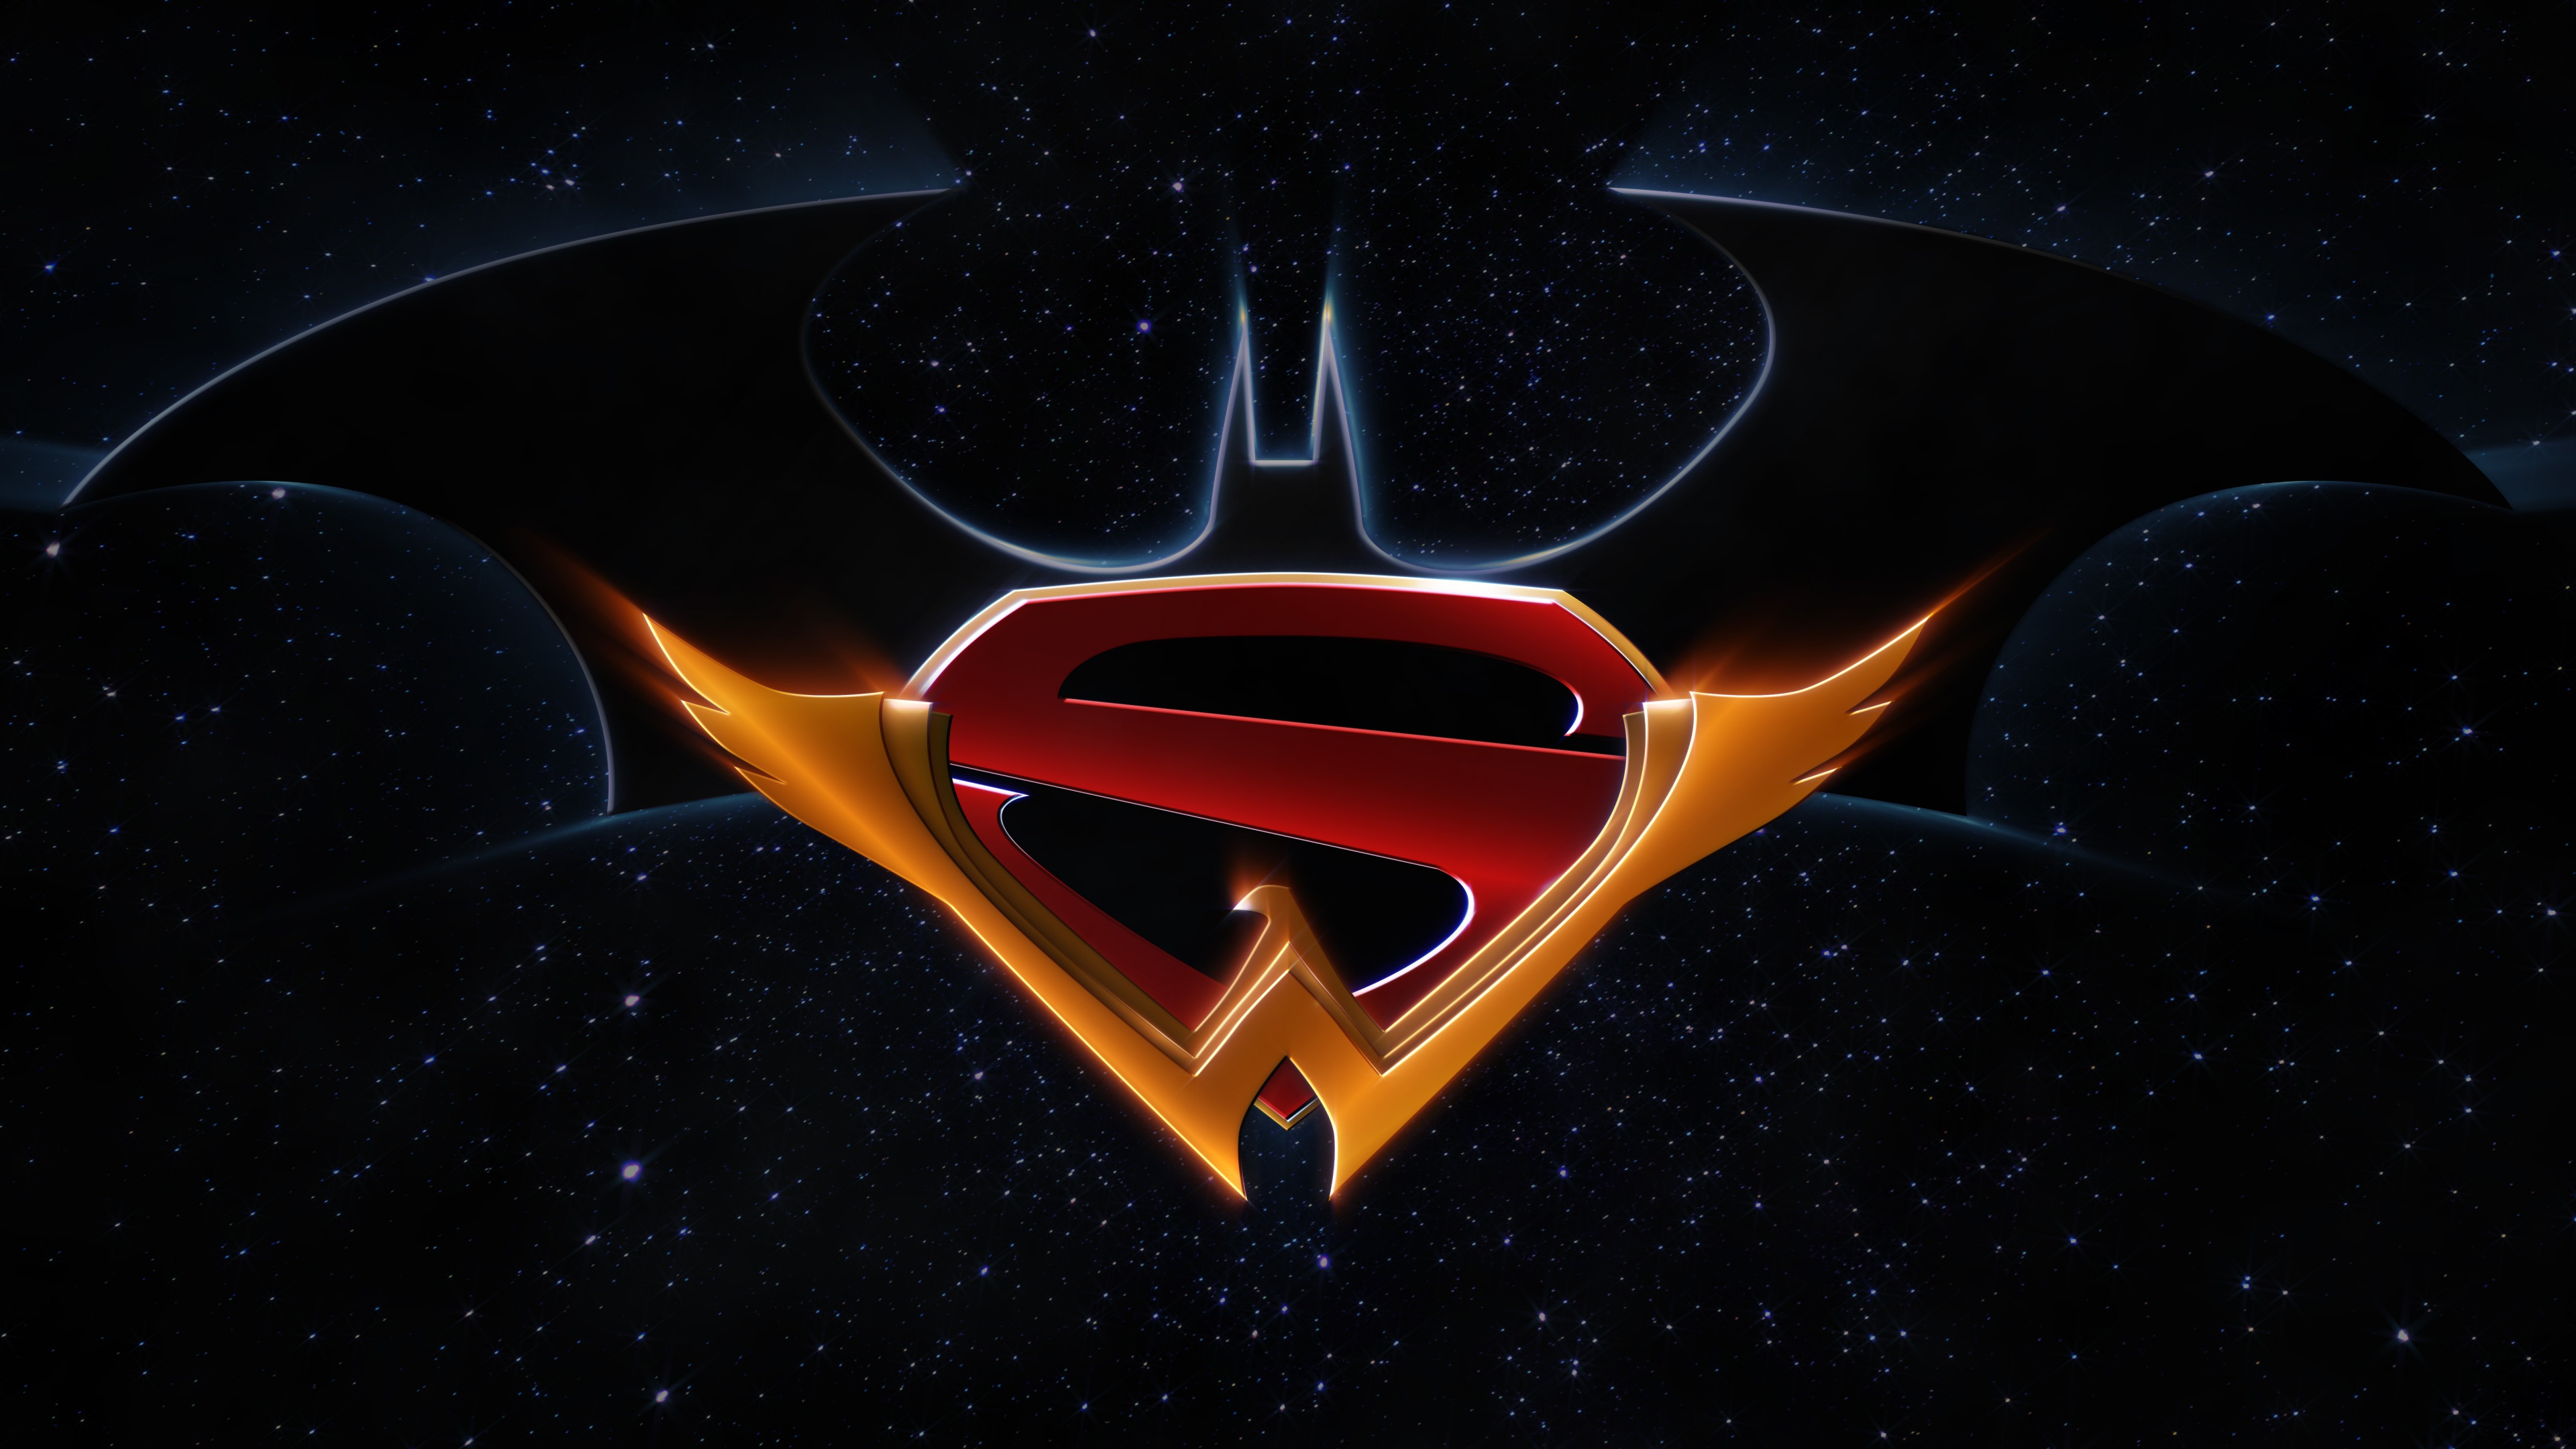 Download Dc Comics Wonder Woman Superman Logo Batman Comic Justice League 4k Ultra Hd Wallpaper 4485